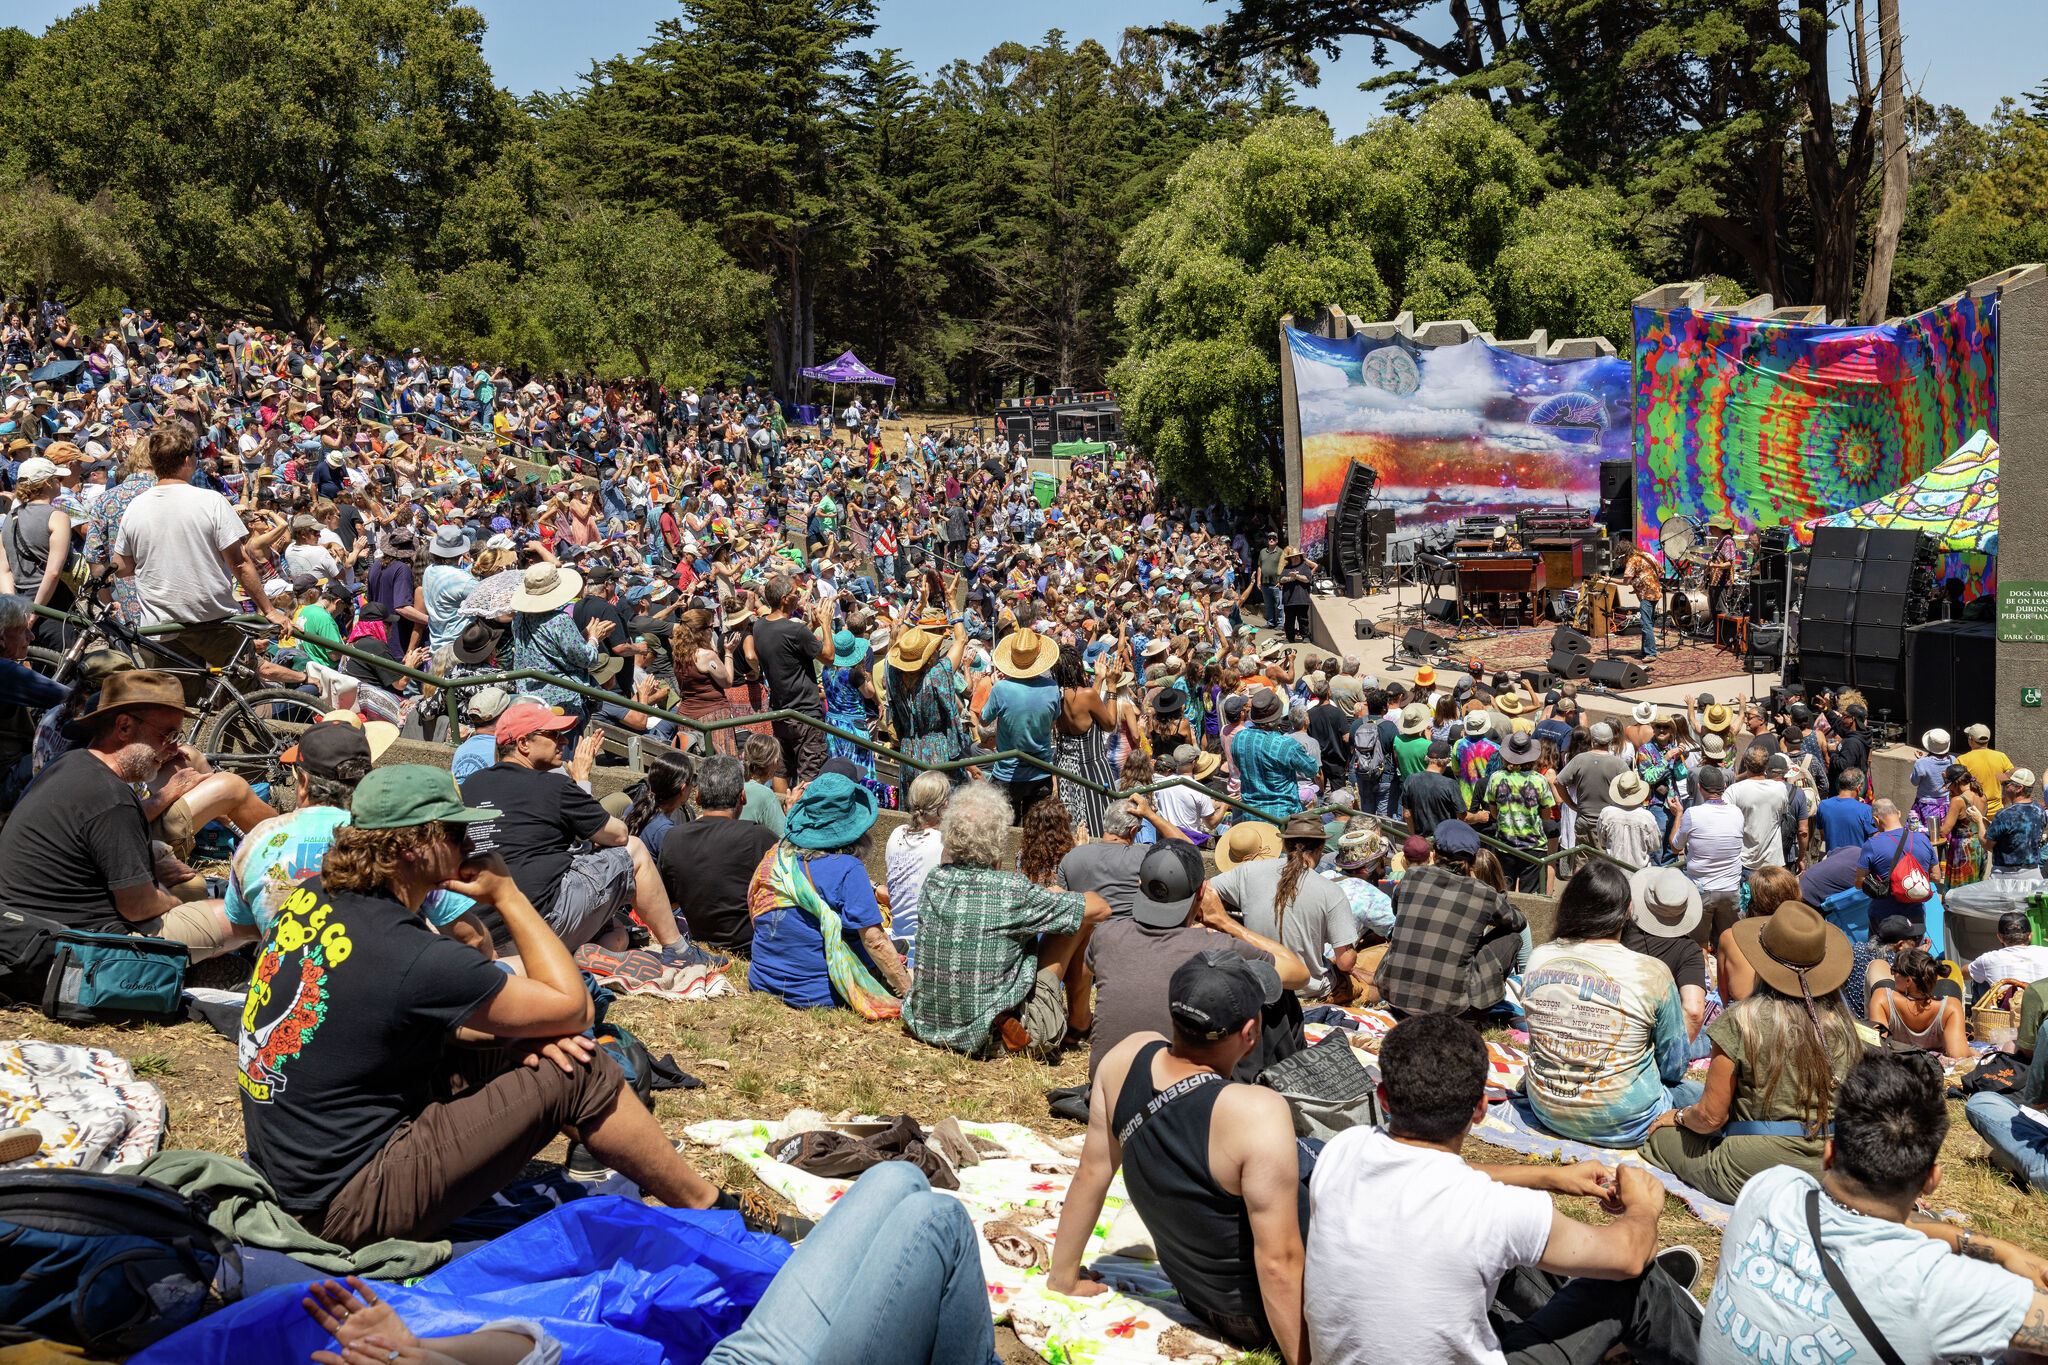 Grateful Dead fans flock to San Francisco for Jerry Garcia celebration